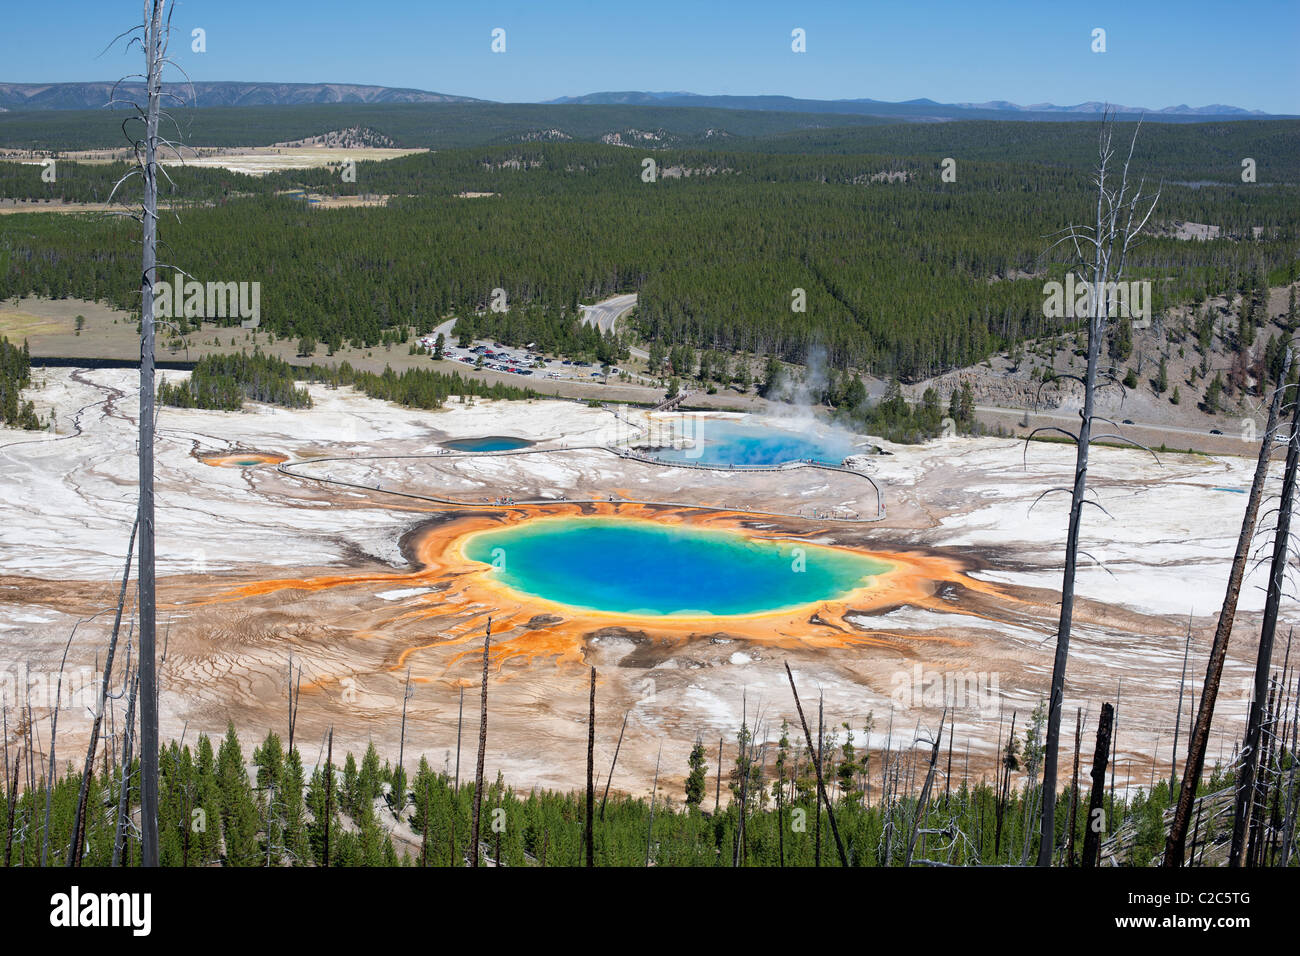 Le Grand Prismatic est la source géothermique la plus grande et la plus colorée du parc national de Yellowstone.Park County, Wyoming, États-Unis. Banque D'Images